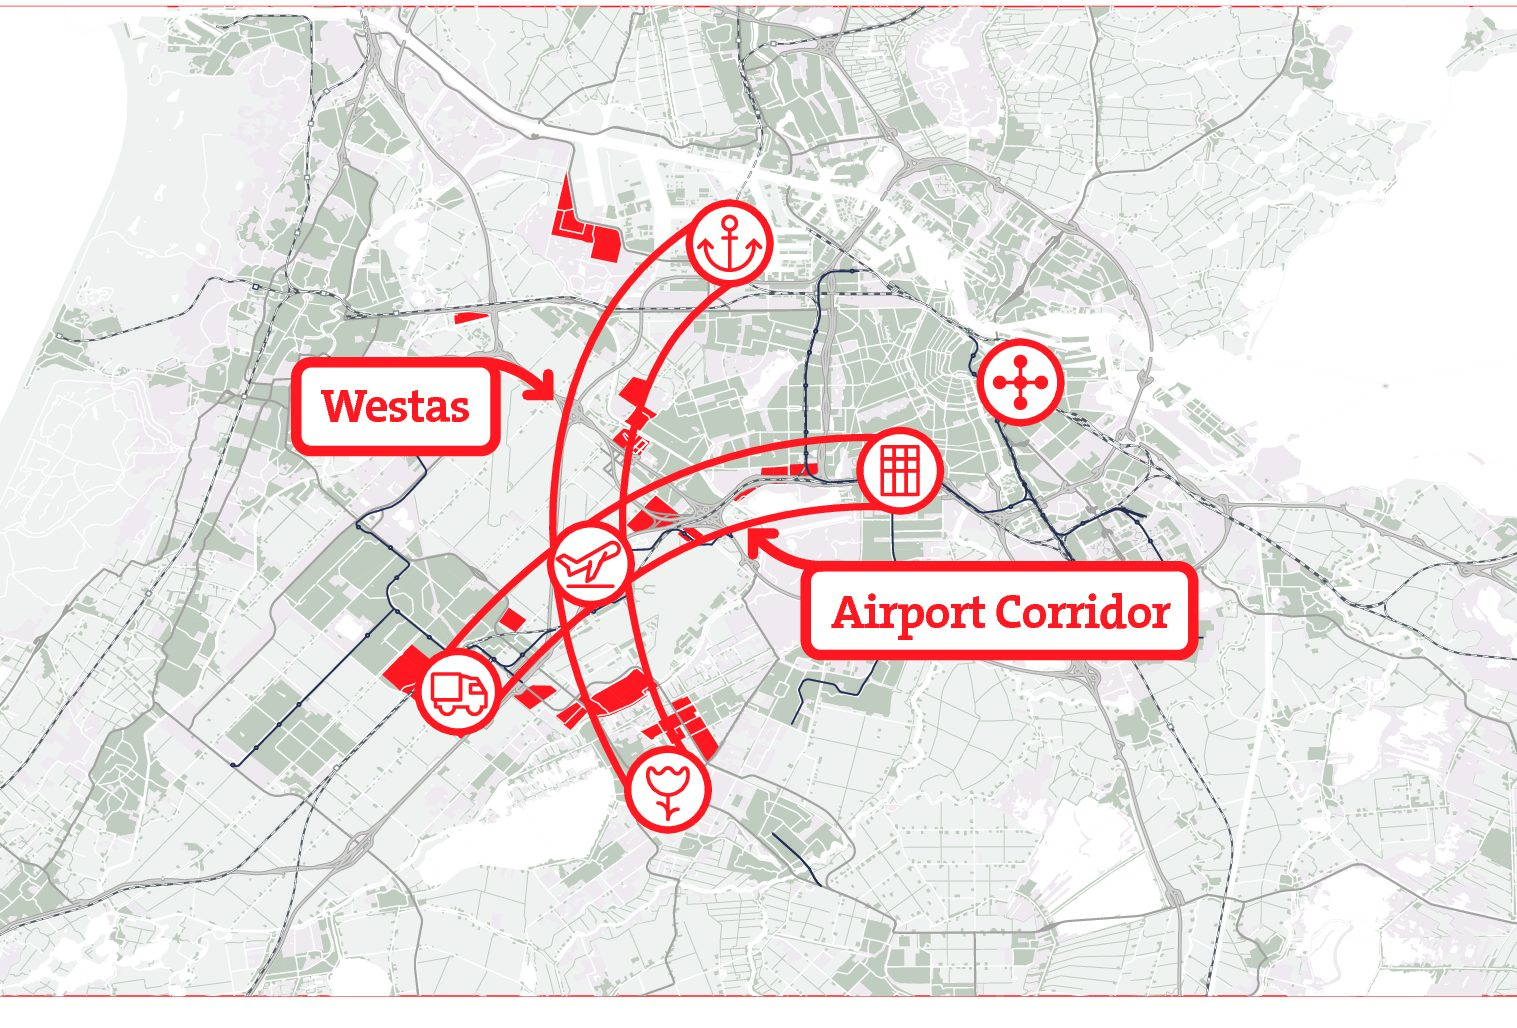 regiokaart-westas-airport-corridor-1